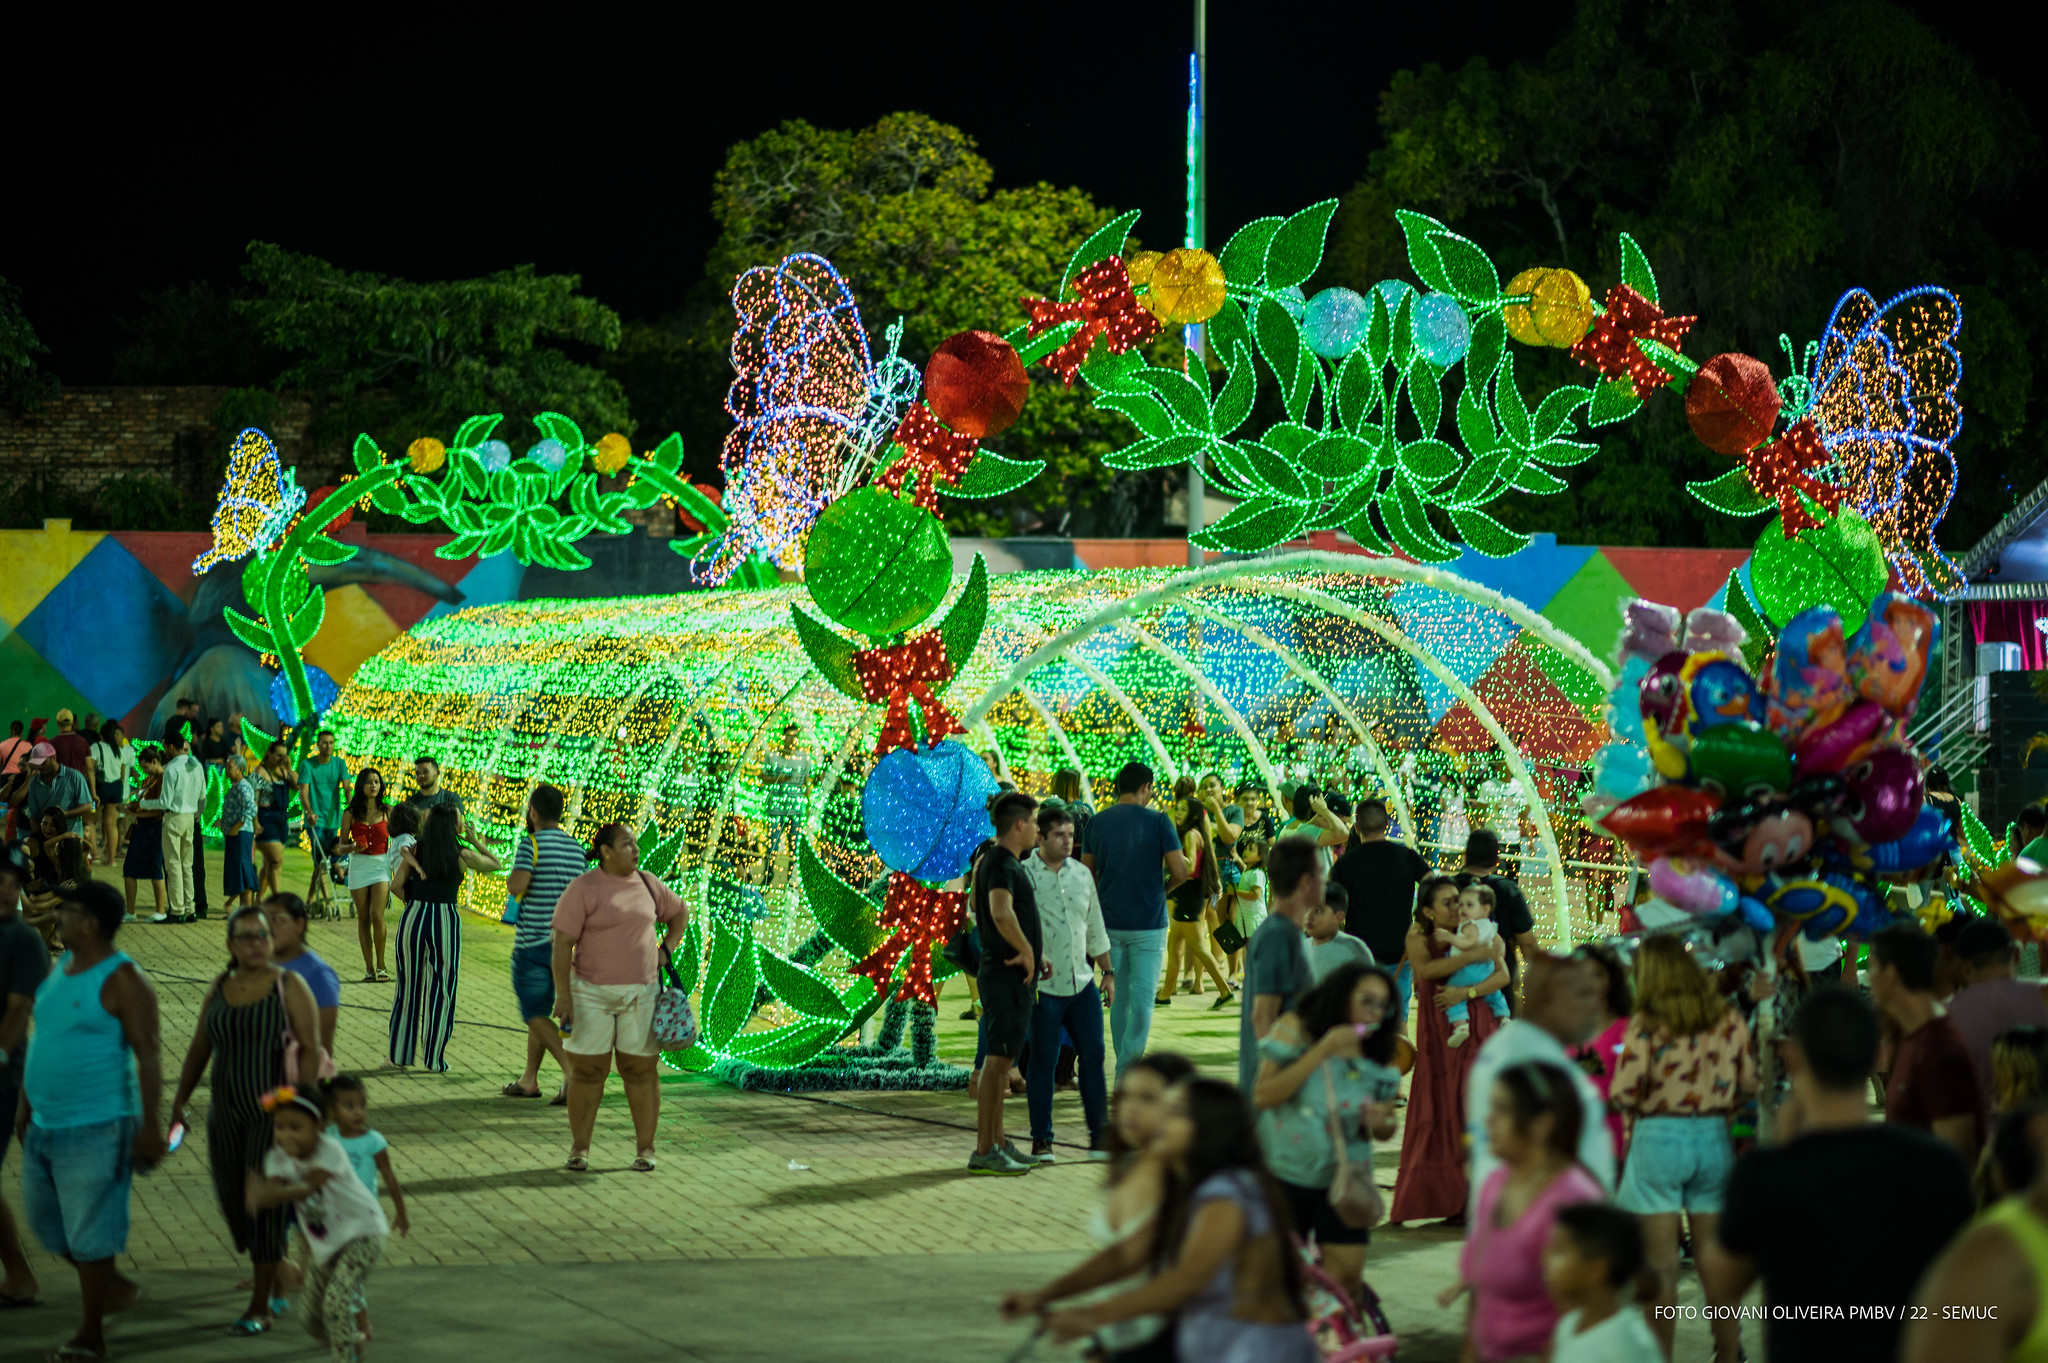 População de Boa Vista se encanta com a decoração natalina em pontos turísticos